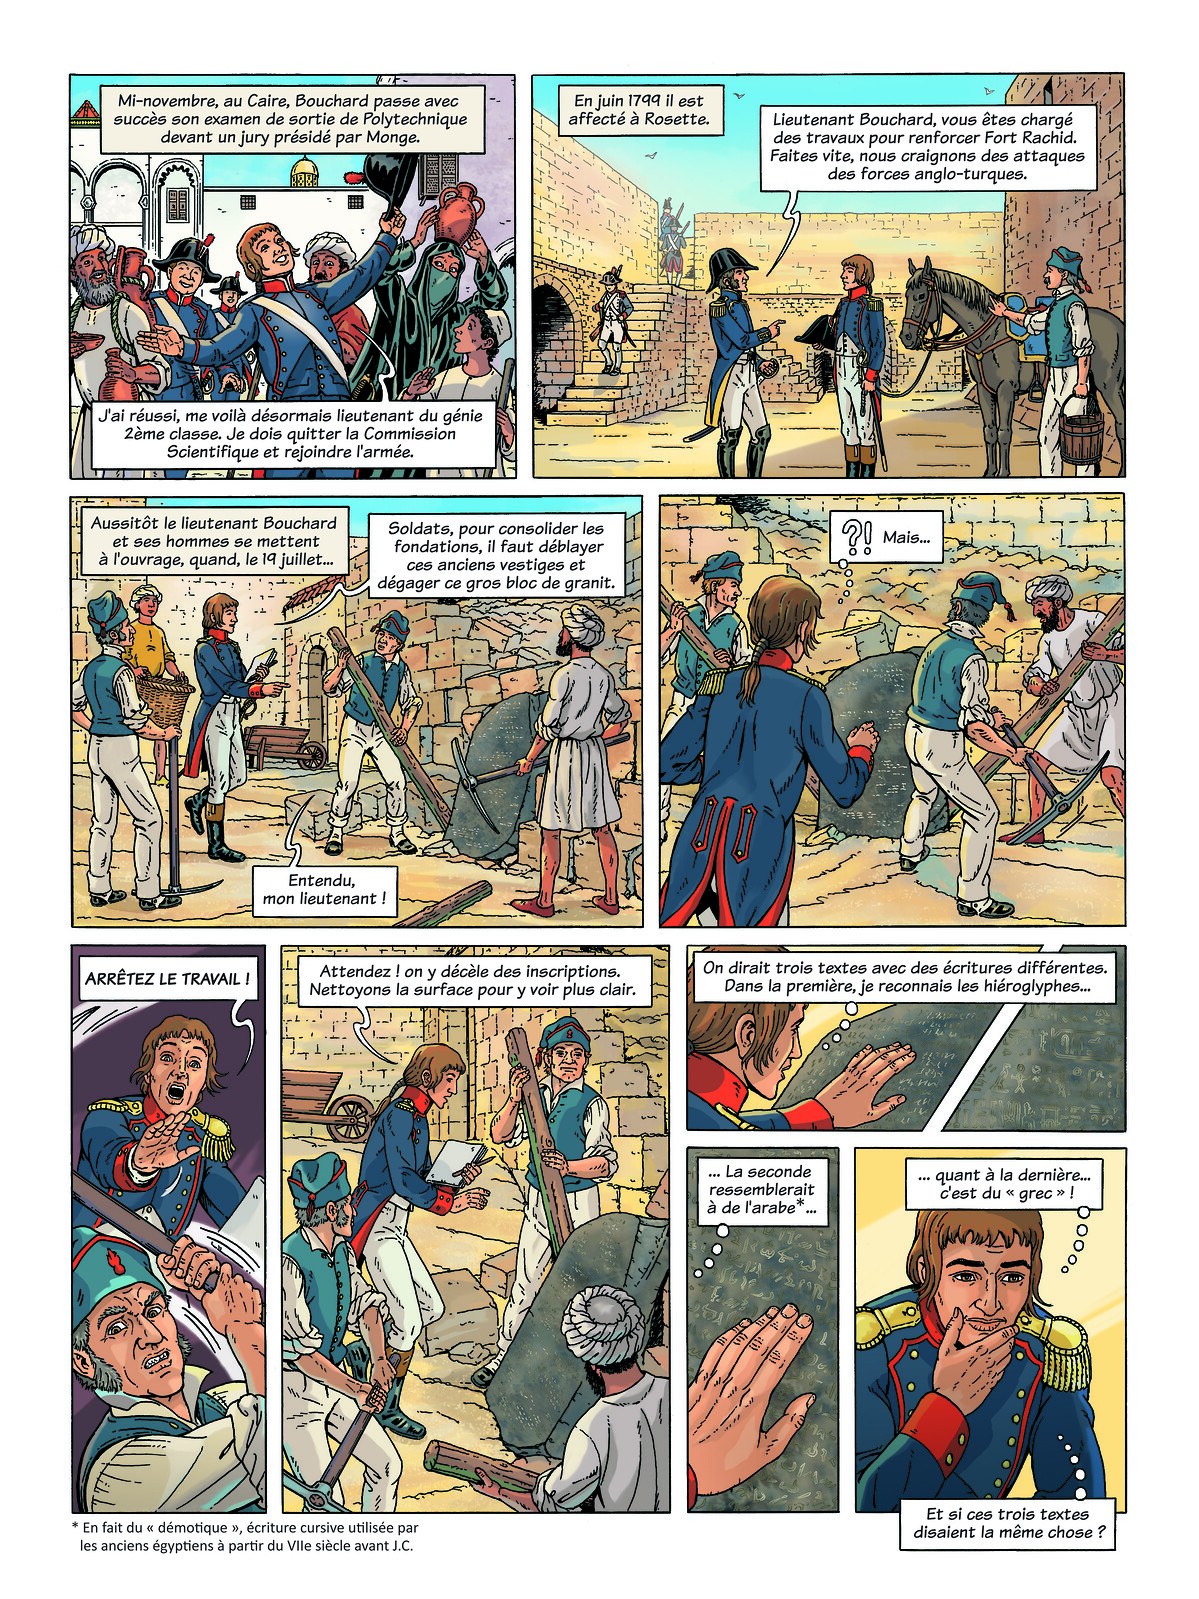 Planche n°5 de la bande dessinée sur Pierre Bouchard